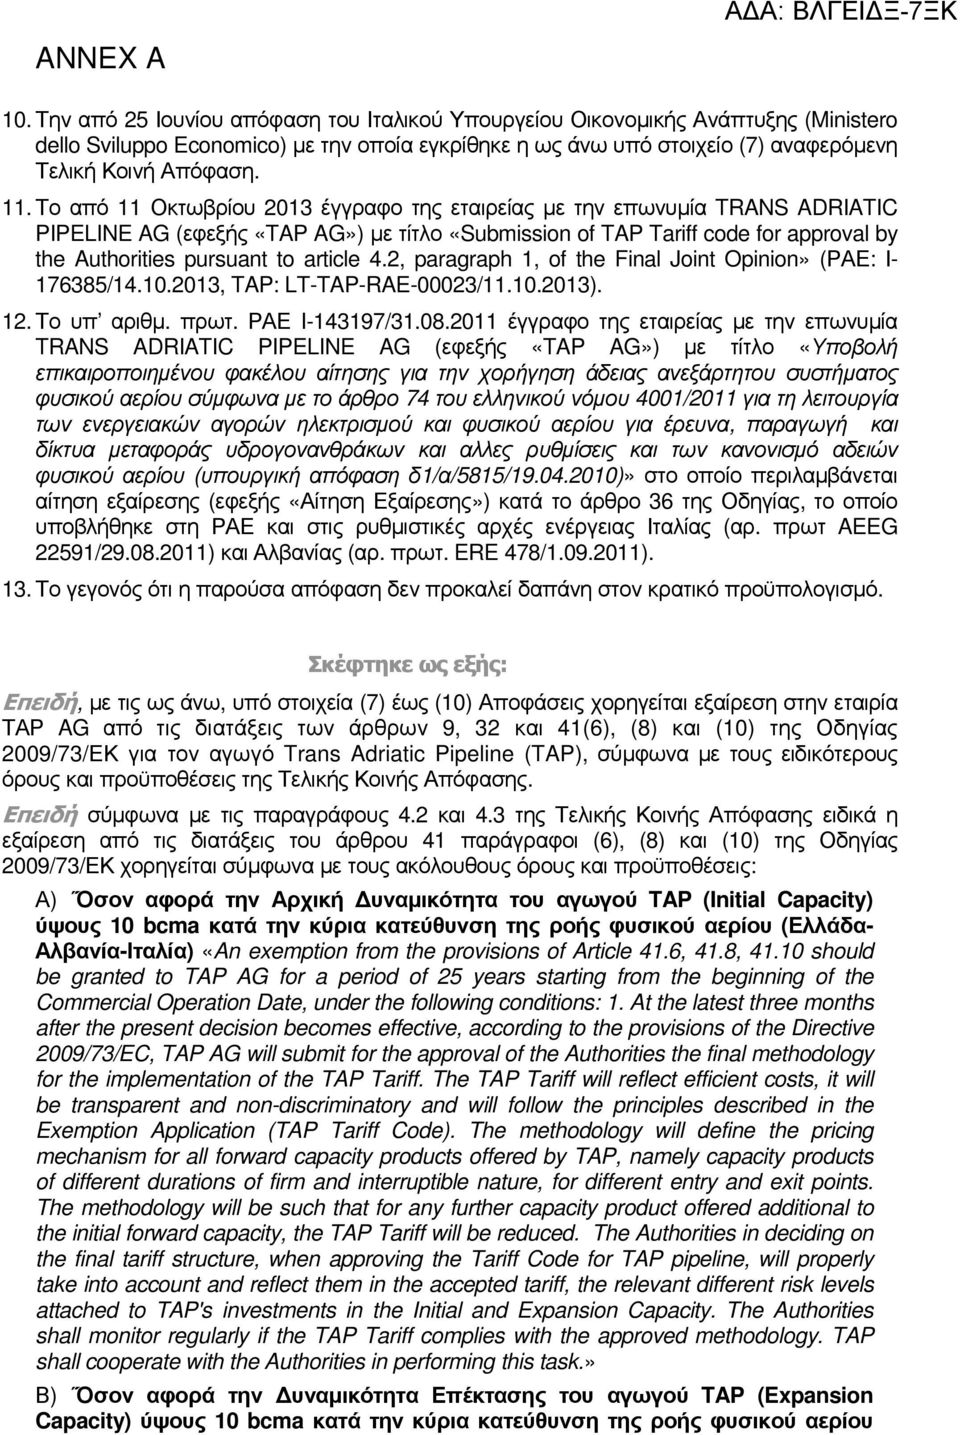 Το από 11 Οκτωβρίου 2013 έγγραφο της εταιρείας µε την επωνυµία TRANS ADRIATIC PIPELINE AG (εφεξής «TAP AG») µε τίτλο «Submission of TAP Tariff code for approval by the Authorities pursuant to article